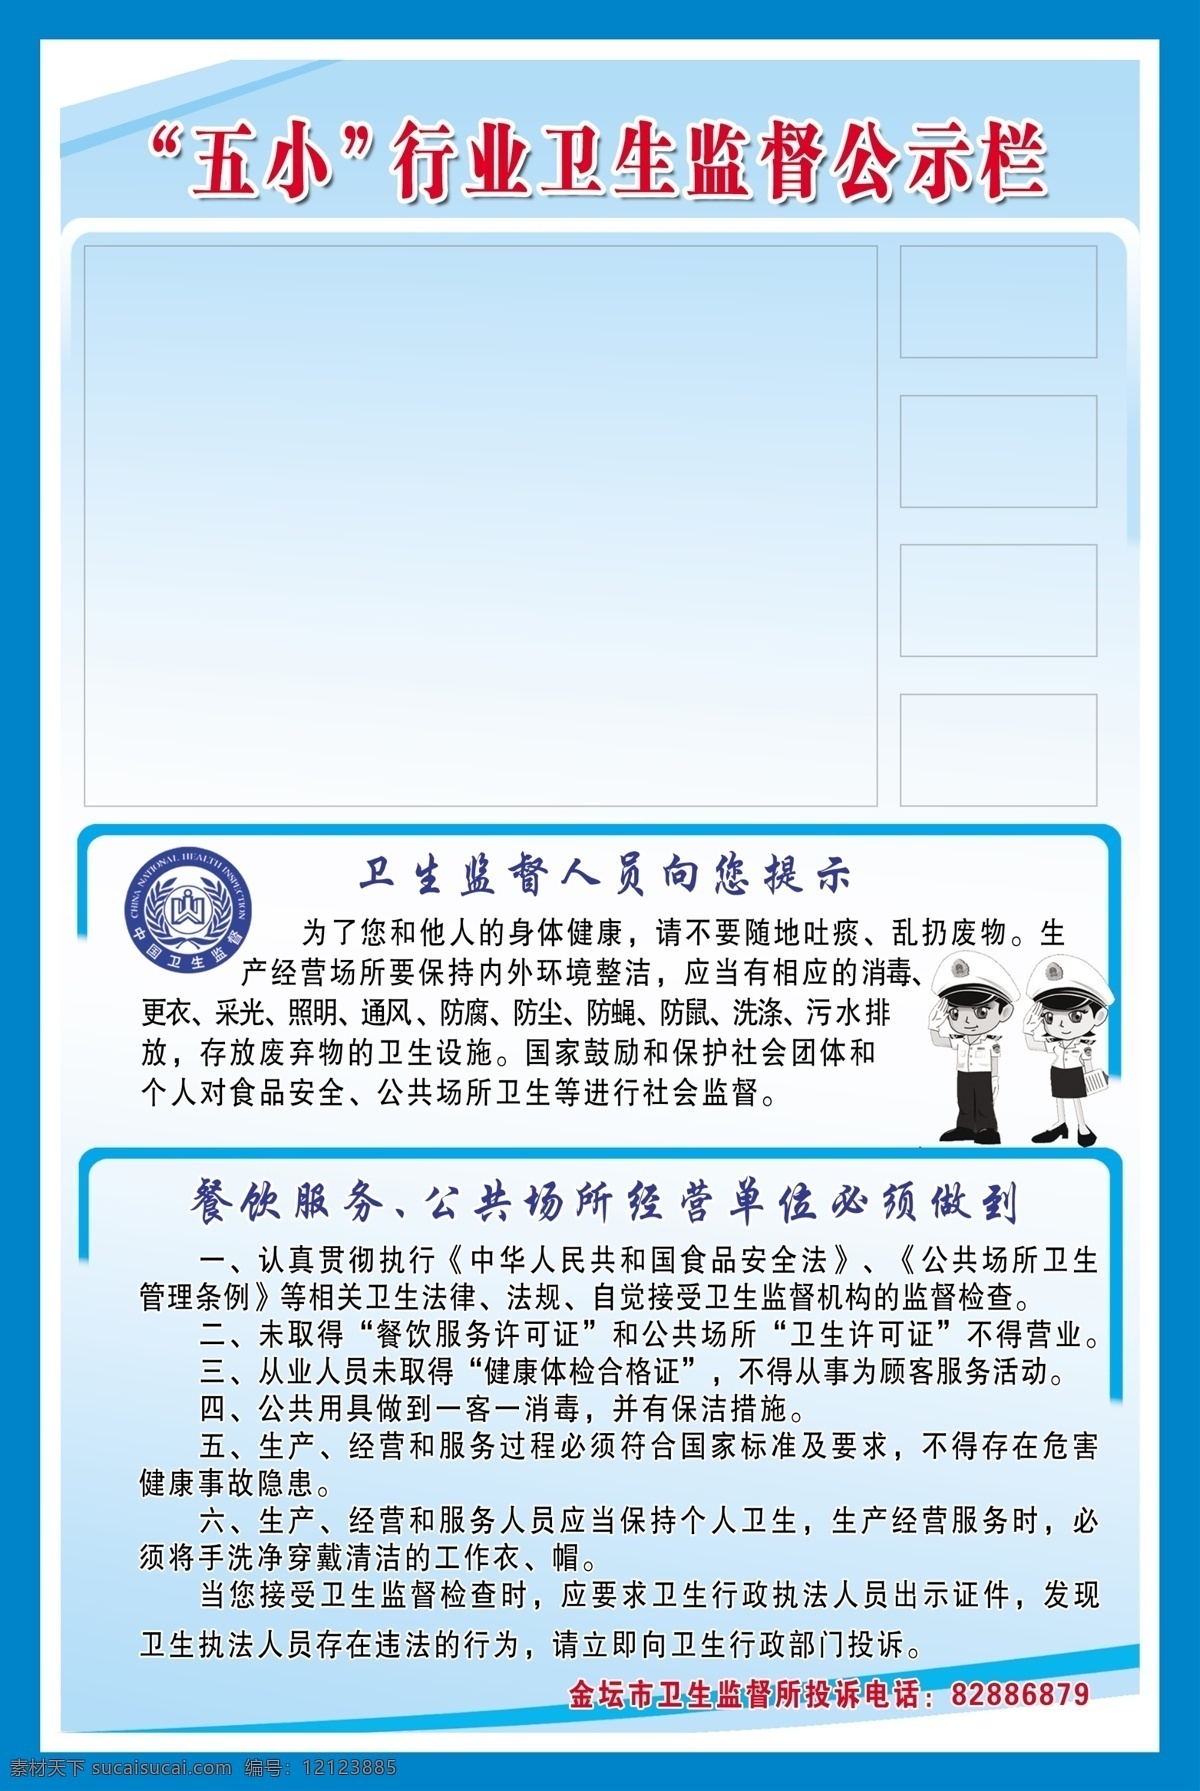 卫生监督 卫生标志 五小行业 卫生 监督员 卡通 图 展板模板 广告设计模板 源文件